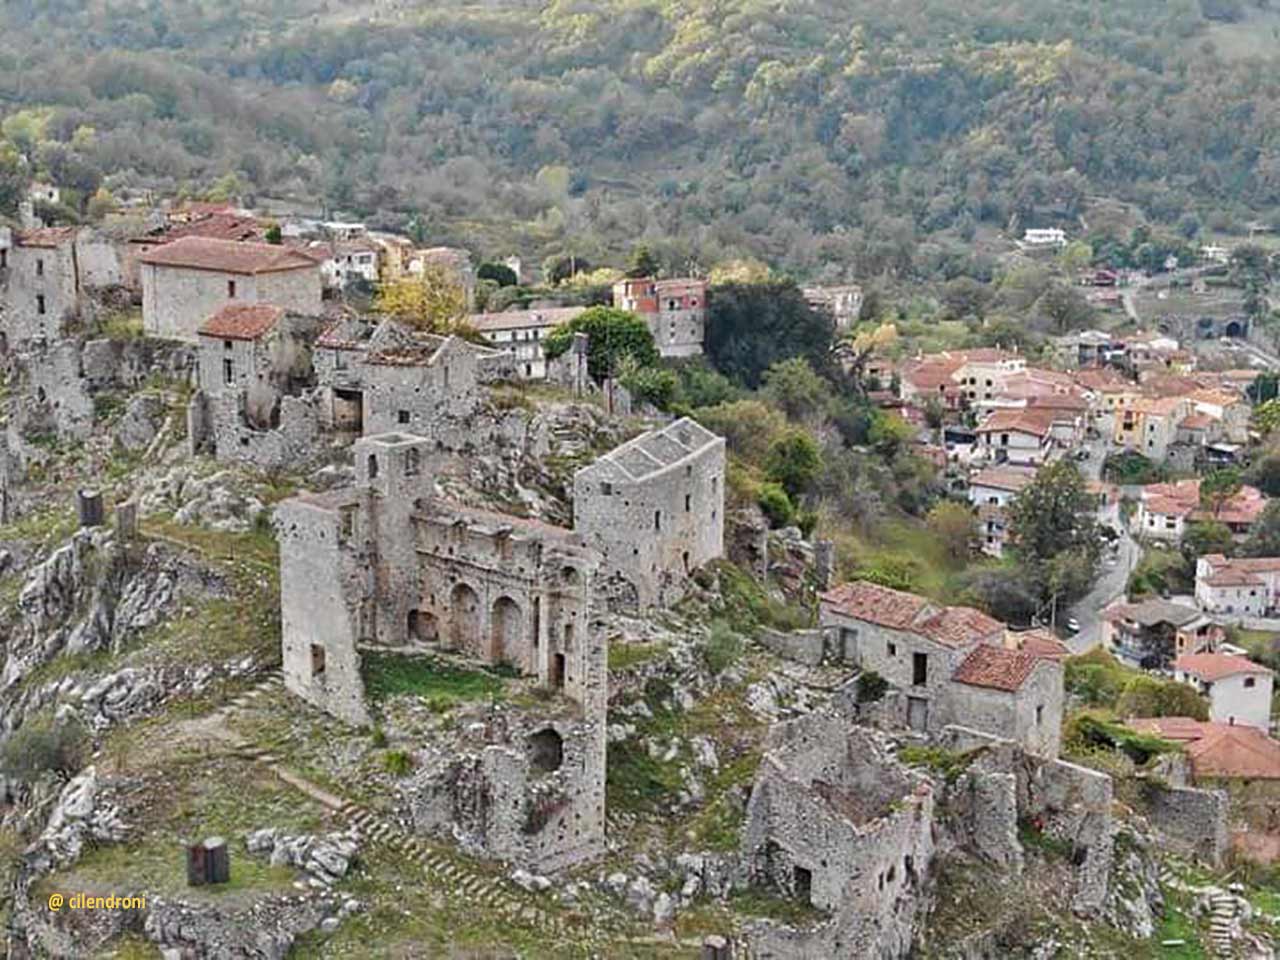 Veduta aerea del borgo abbandonato di San Severino di Centola, ph cilendroni.